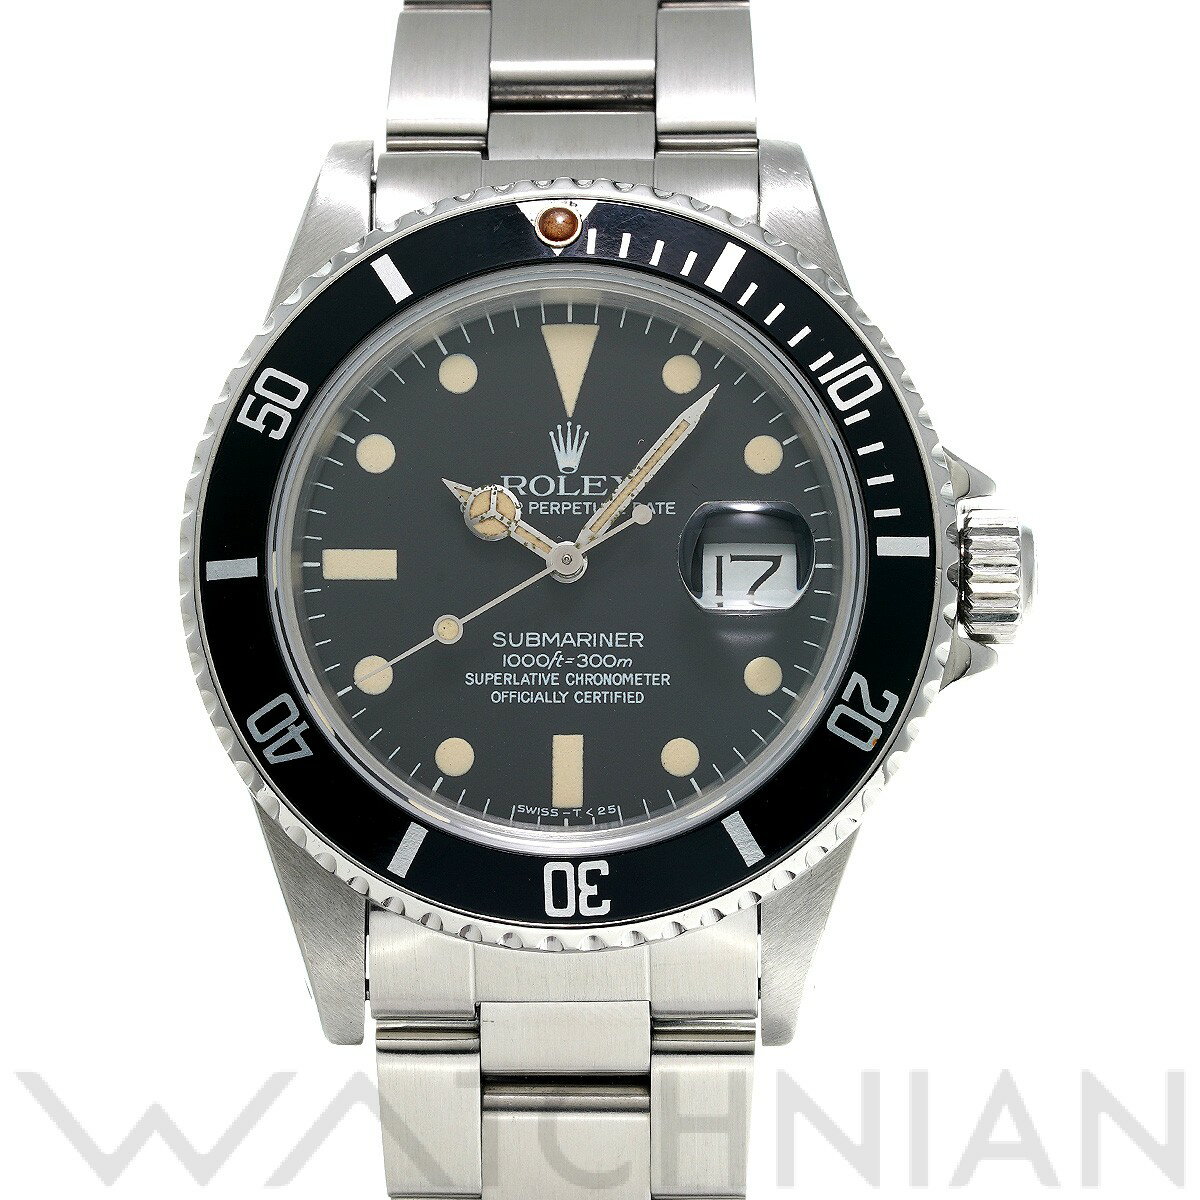 【中古】 ロレックス ROLEX サブマリーナ デイト 16800 72番台(1982年頃製造) ブラック メンズ 腕時計